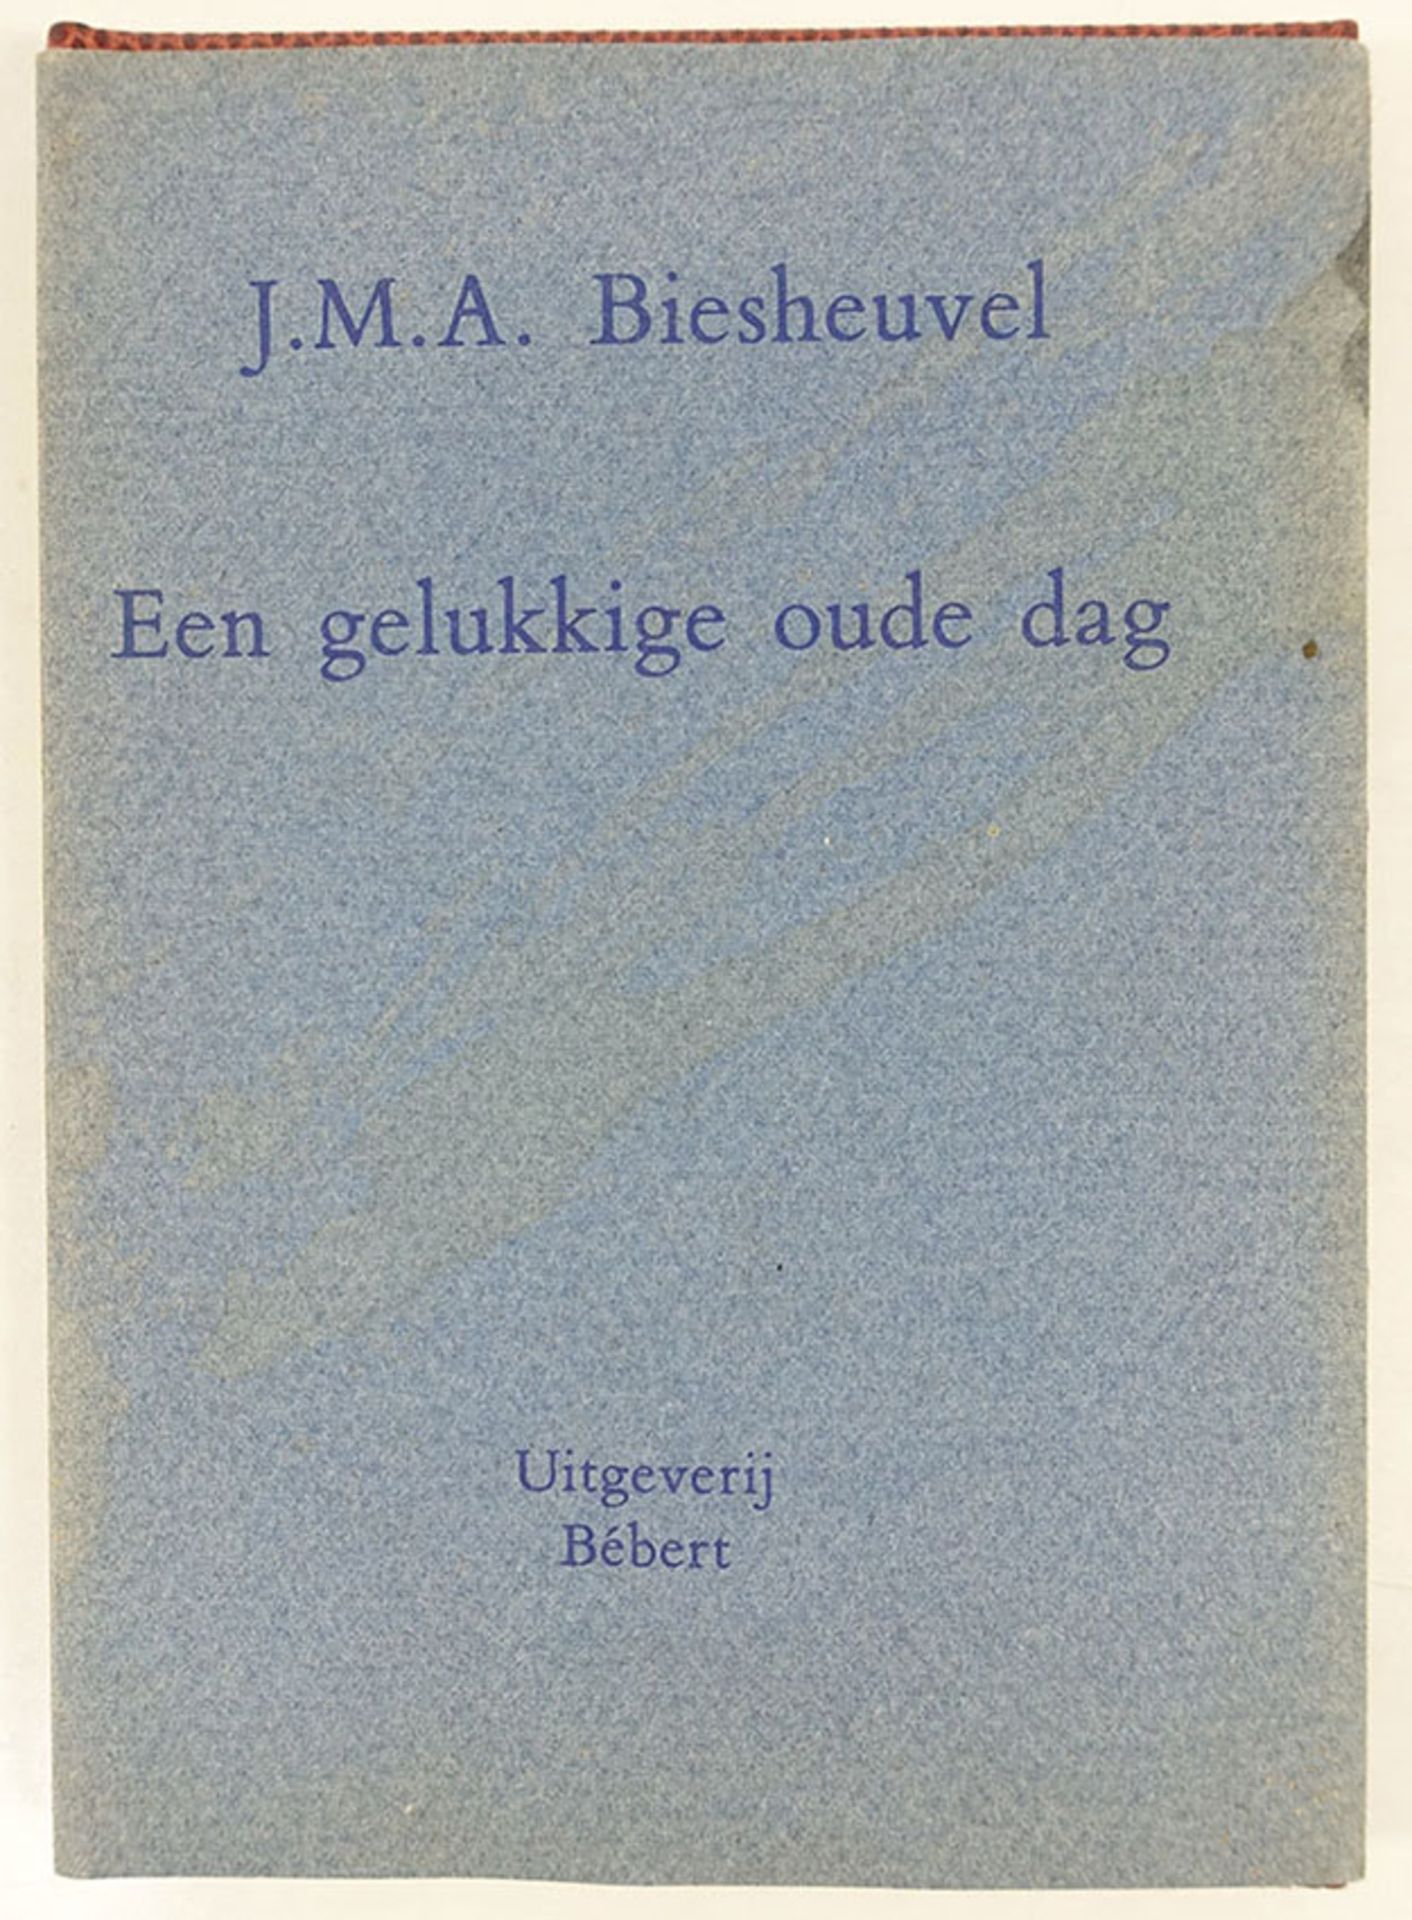 PRIVATE PRESS PUBLICATIONS -- BIESHEUVEL, J.M.A. Een gelukkige oude dag. Rott., Bébert, (1980). 13,